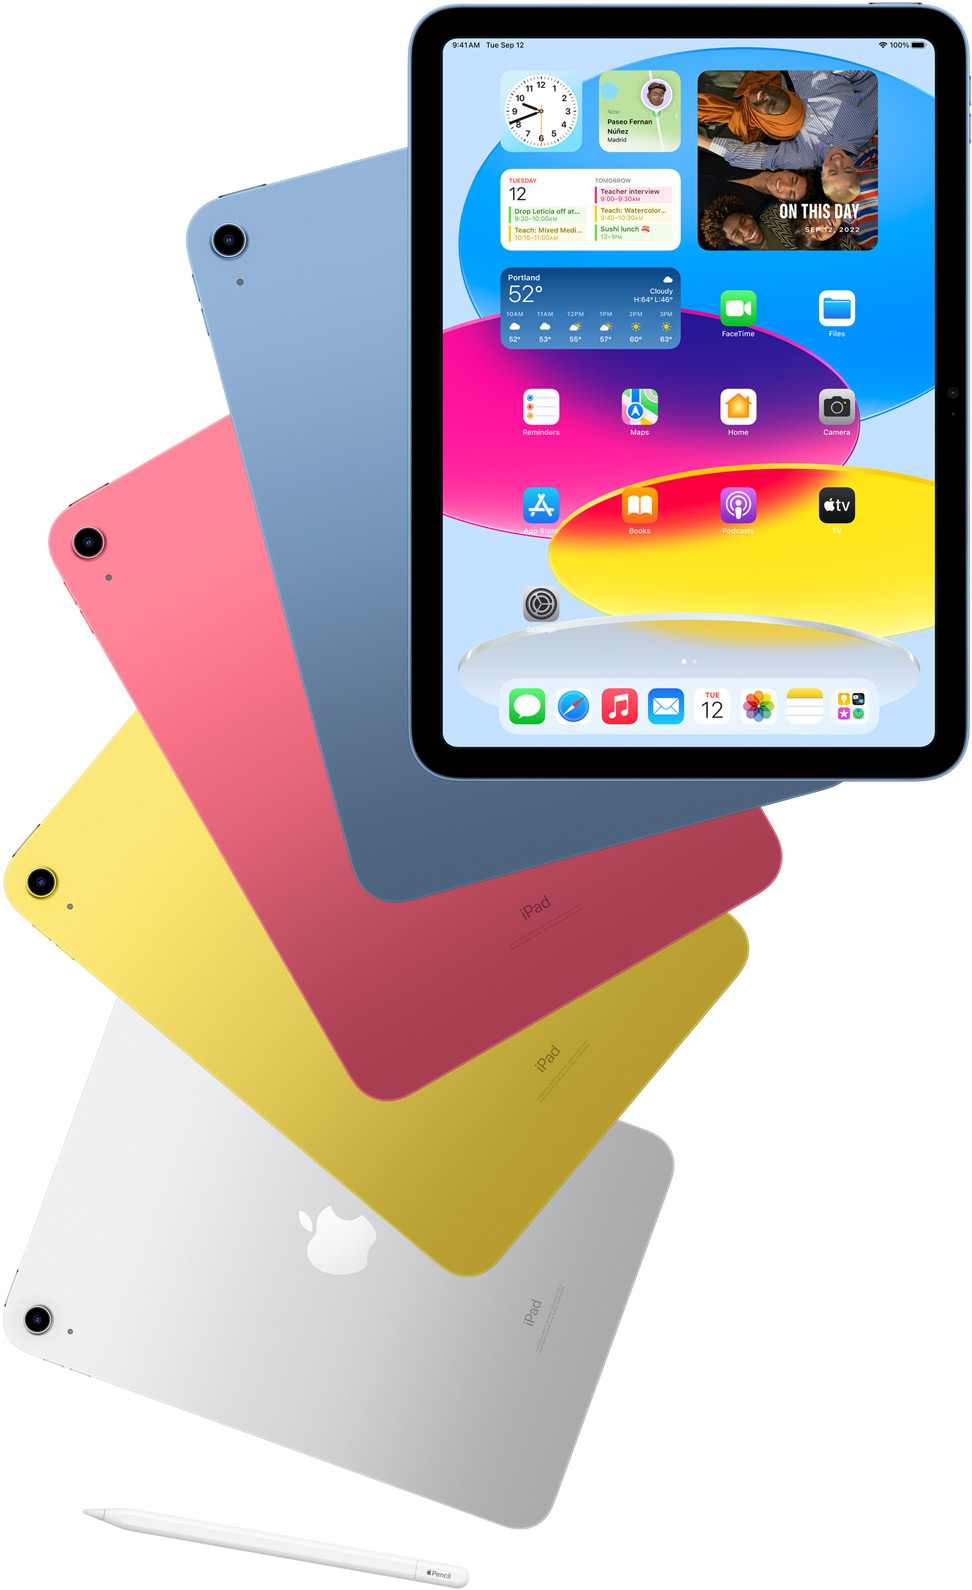 Vorderansicht des iPad zeigt den Homescreen. Dahinter Rückansichten von iPad Modellen in Blau, Pink, Gelb und Silber. Ein Apple Pencil liegt neben den angeordneten iPad Modellen.